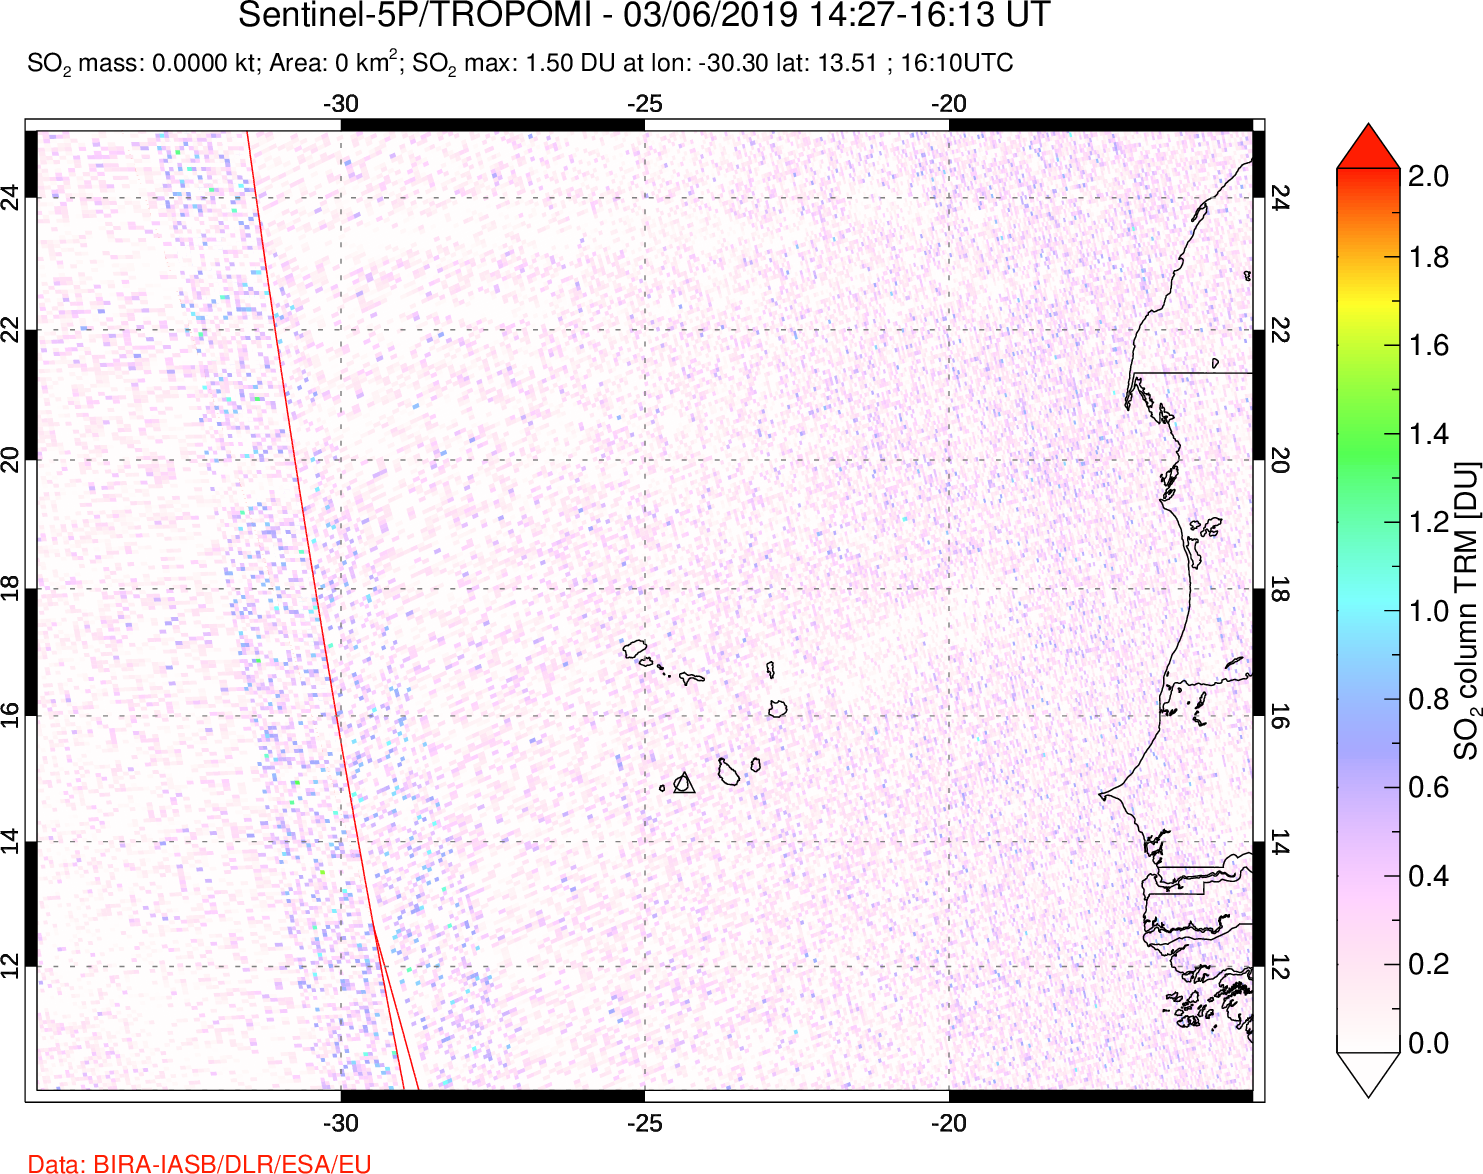 A sulfur dioxide image over Cape Verde Islands on Mar 06, 2019.